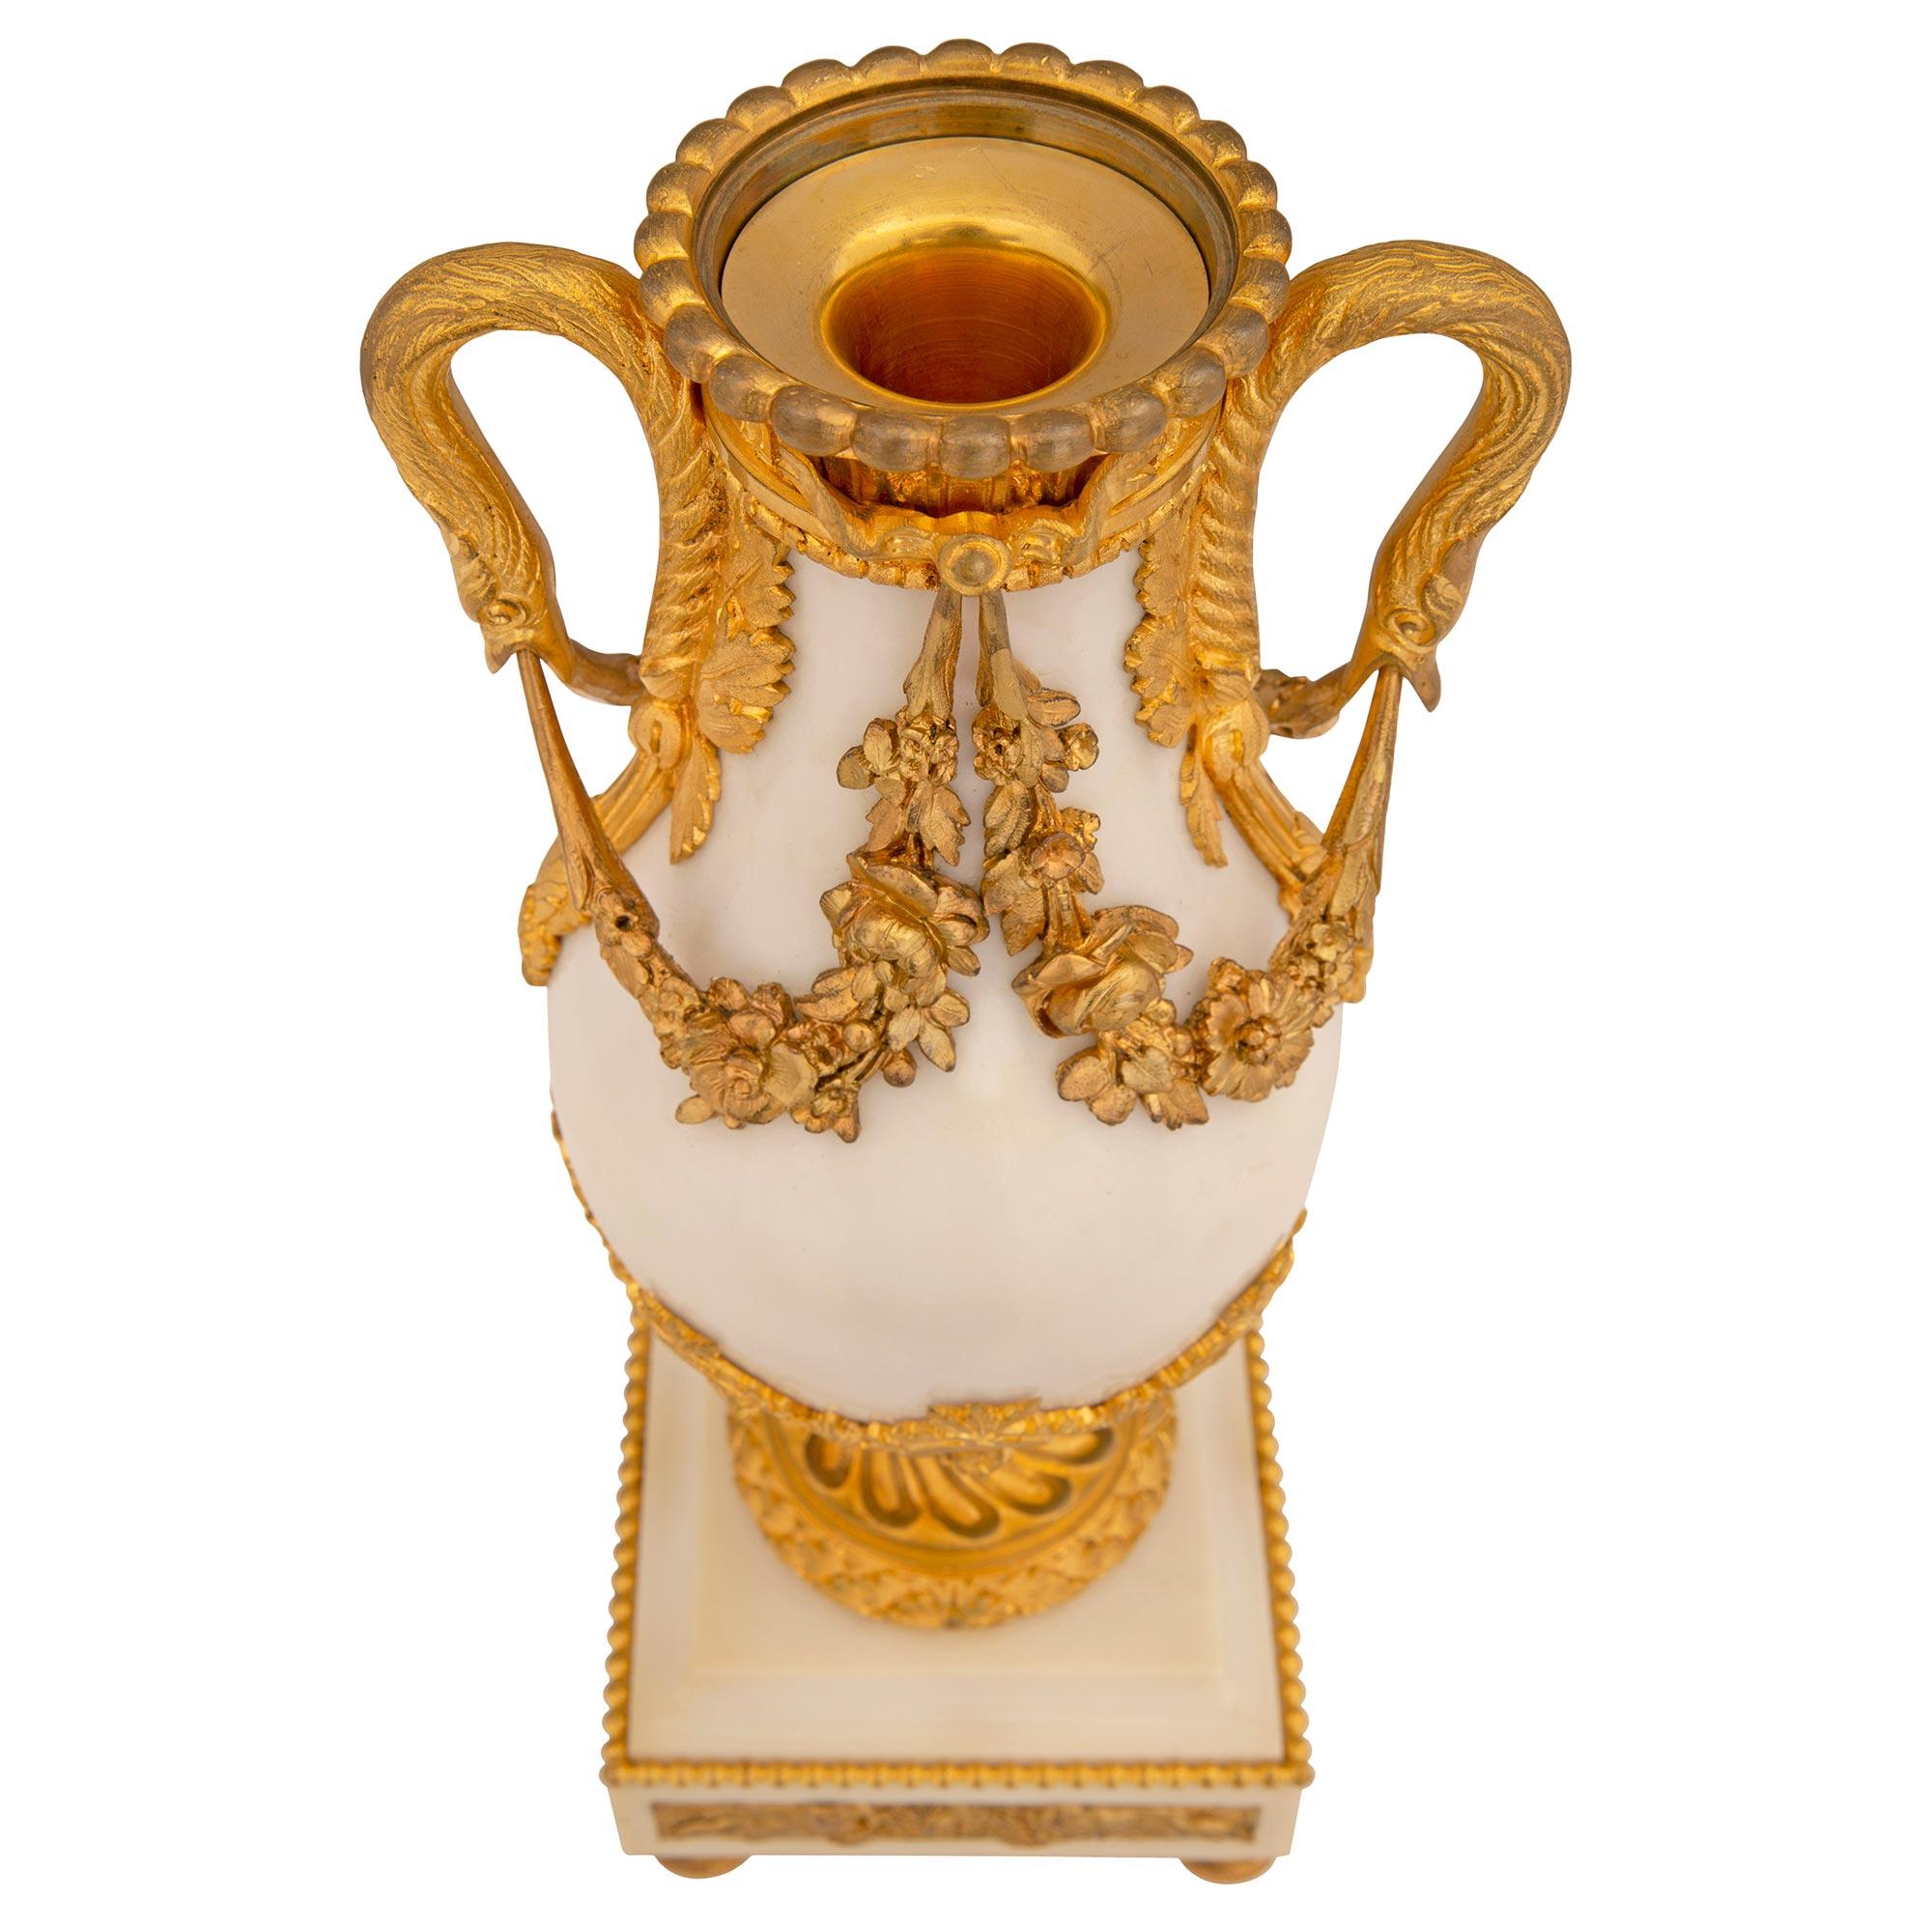 Ein hervorragendes Paar französischer Louis XVI-Urnen aus weißem Carrara-Marmor und Ormolu. Jede Urne steht auf eleganten, topfförmigen Ormolu-Füßen unter dem quadratischen Sockel aus weißem Carrara-Marmor, der mit einem umlaufenden Perlenband und